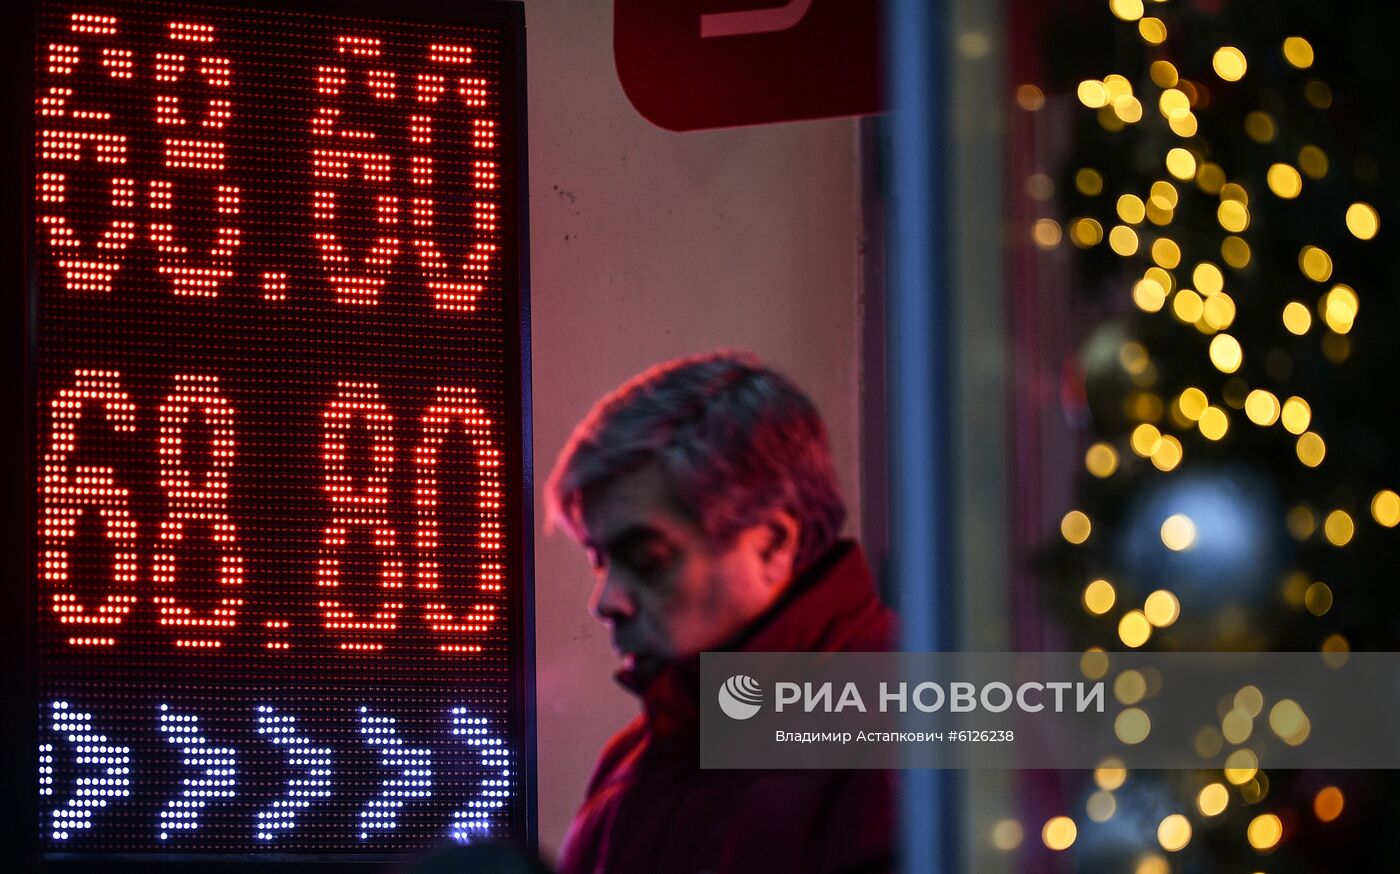 Курс евро опустился ниже 68 рублей впервые с января 2018 года